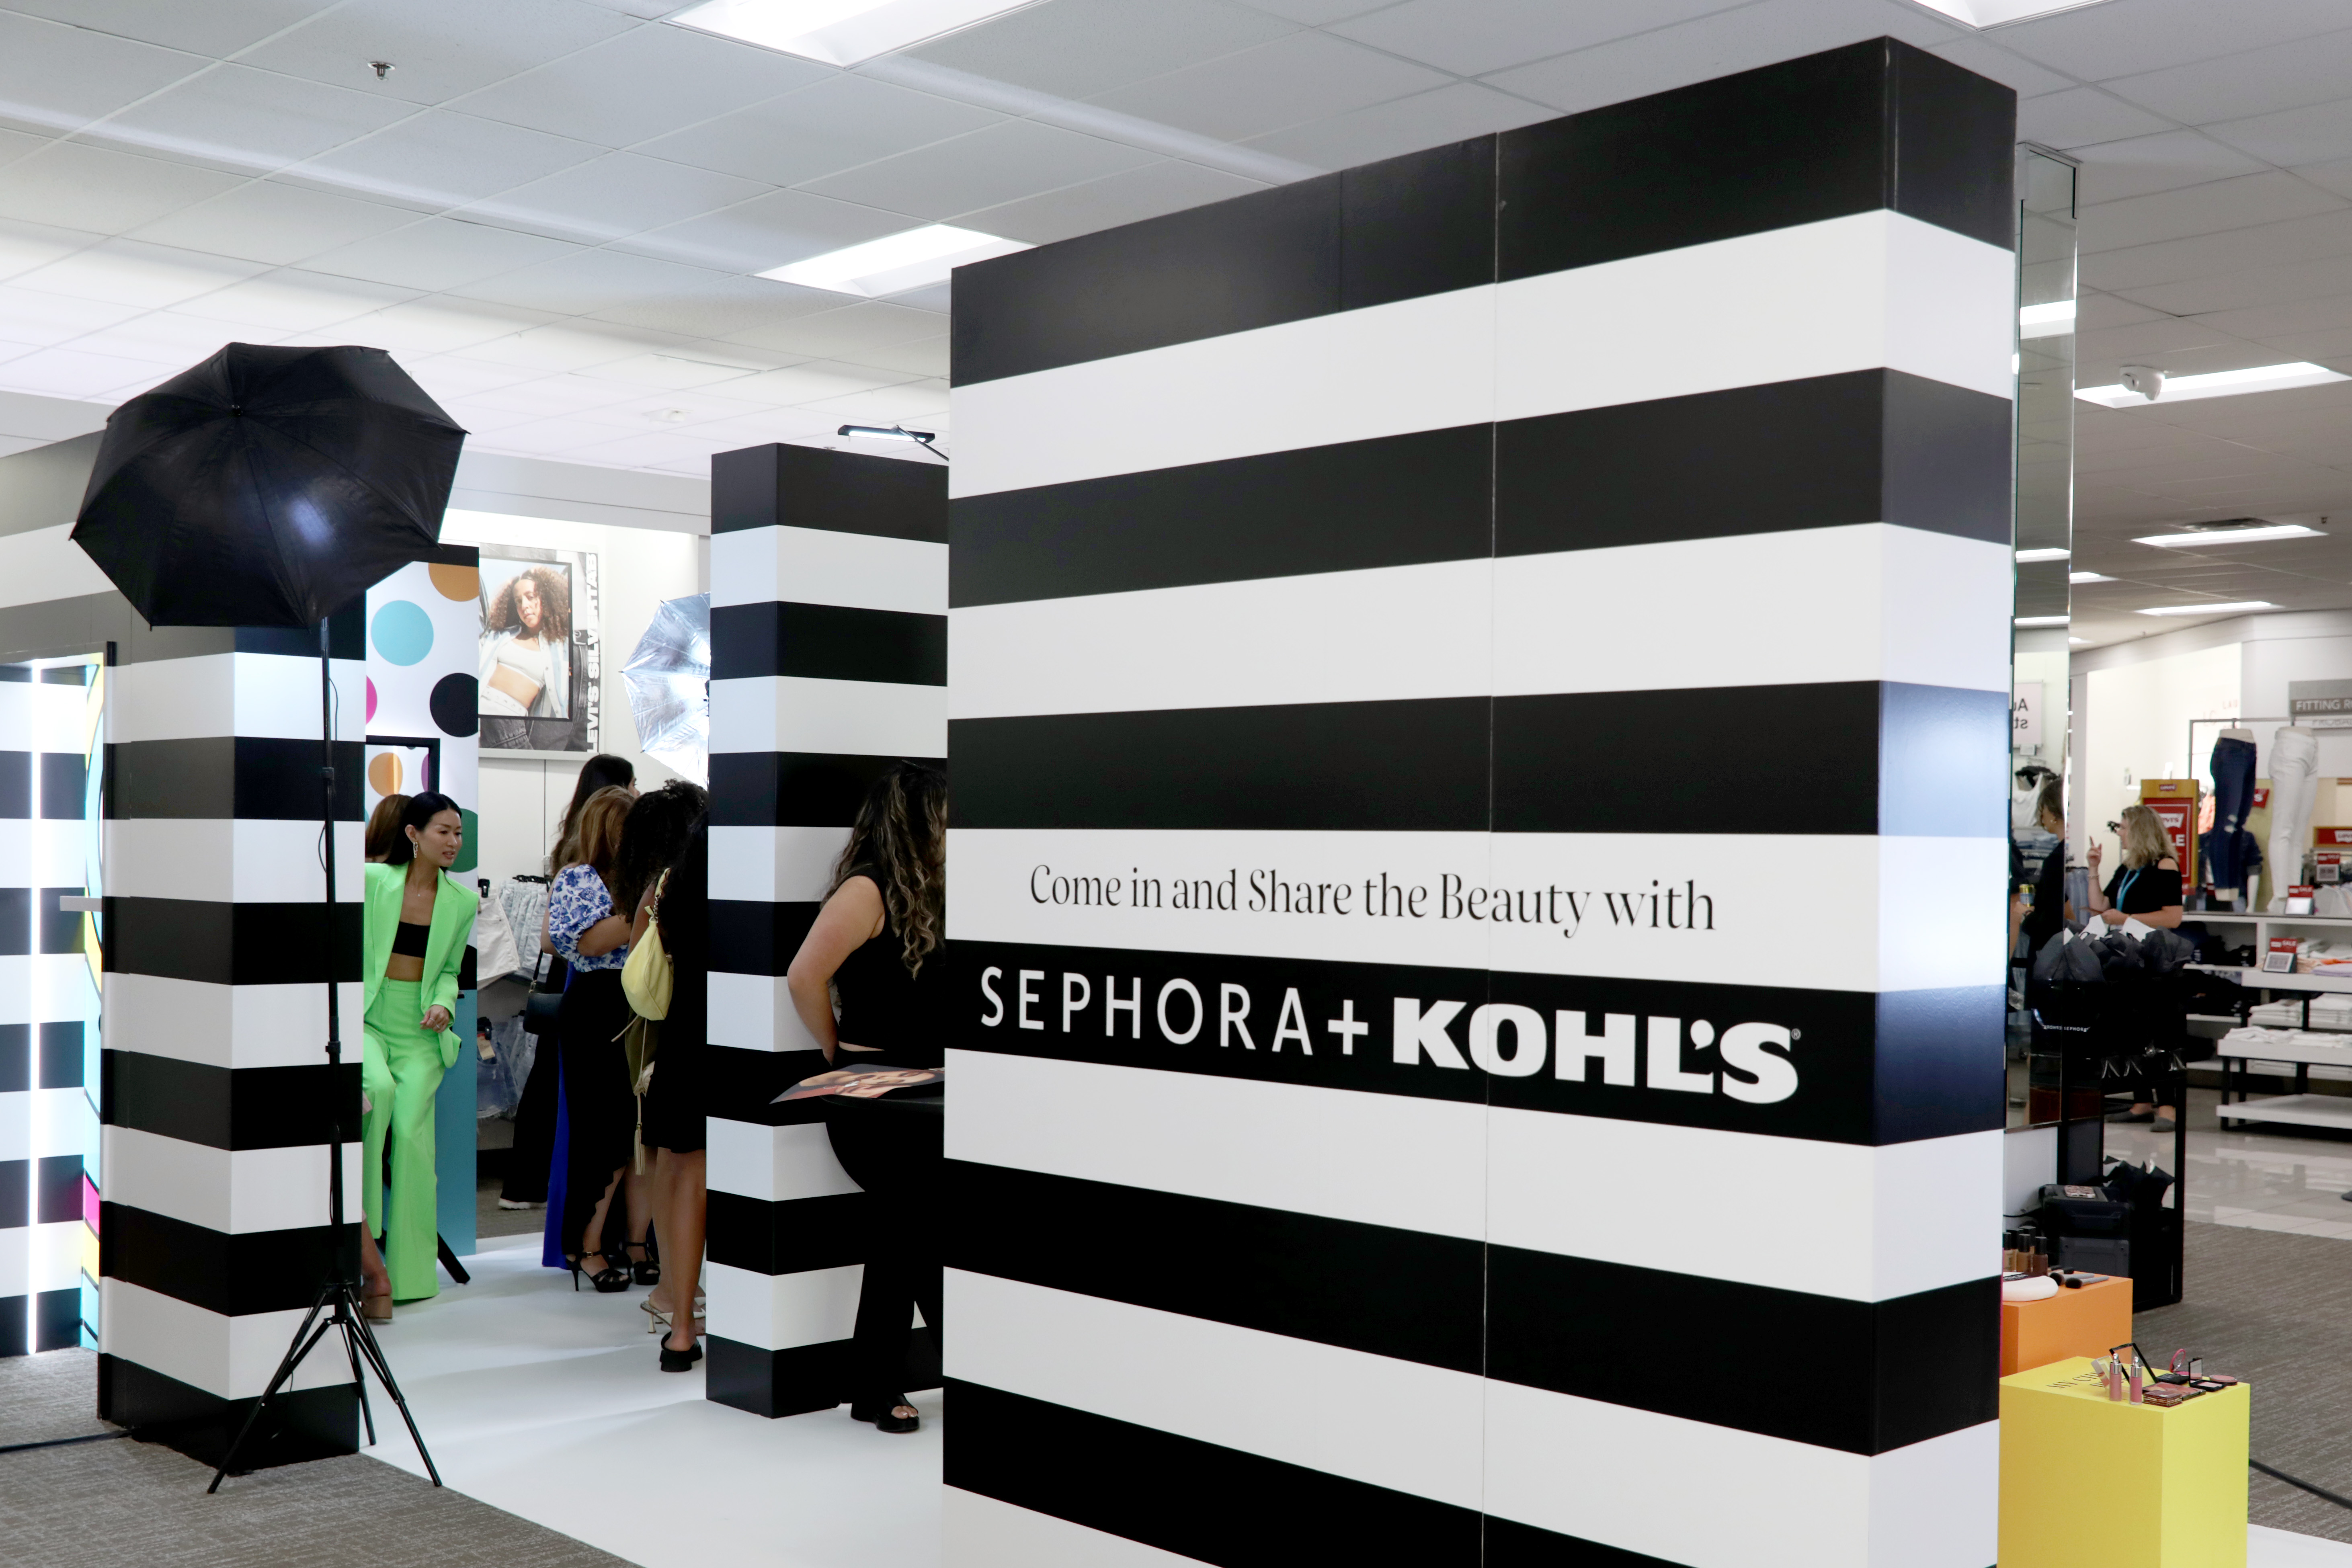 Sephora ist ein globaler Modehändler mit 2.600 Filialen